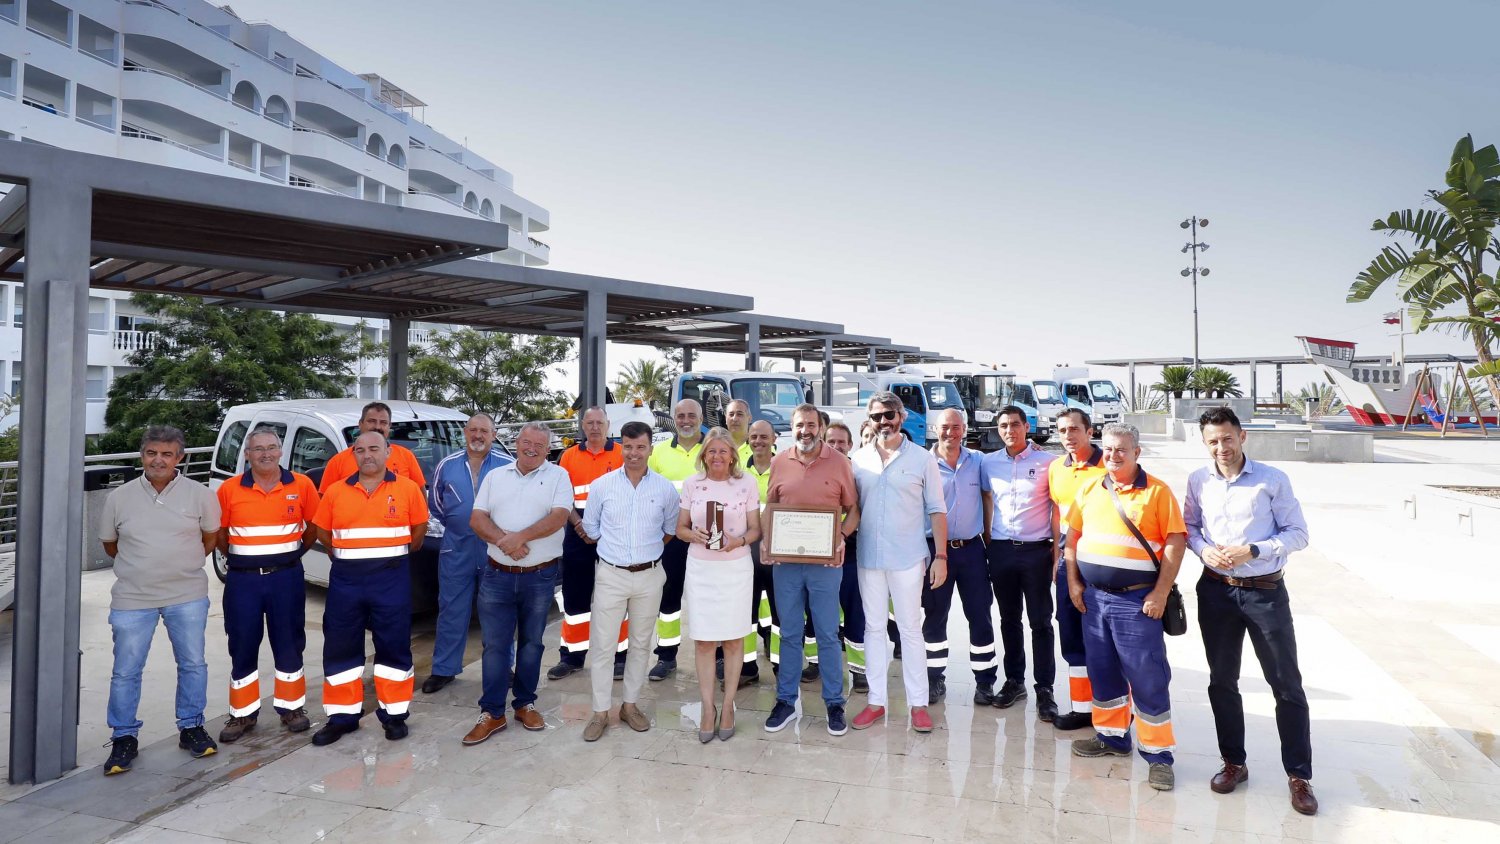 Marbella obtiene la Escoba de Platino por la labor en materia de sostenibilidad e innovación en el área de limpieza